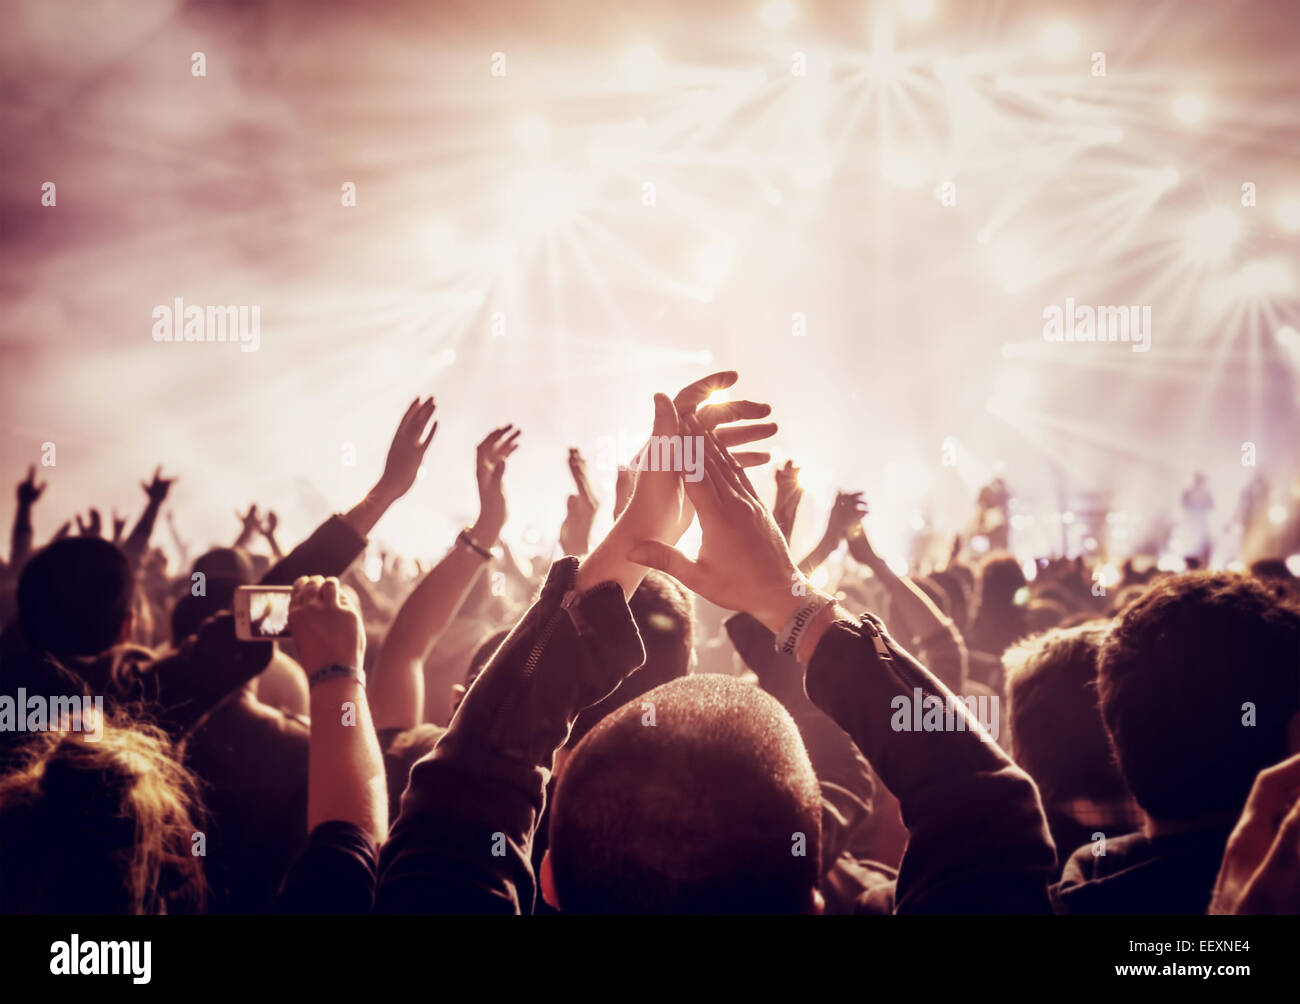 Style vintage photo d'une foule, heureux les personnes bénéficiant de concert de rock, fait lever les mains et les mains de plaisir, vie nocturne active Banque D'Images